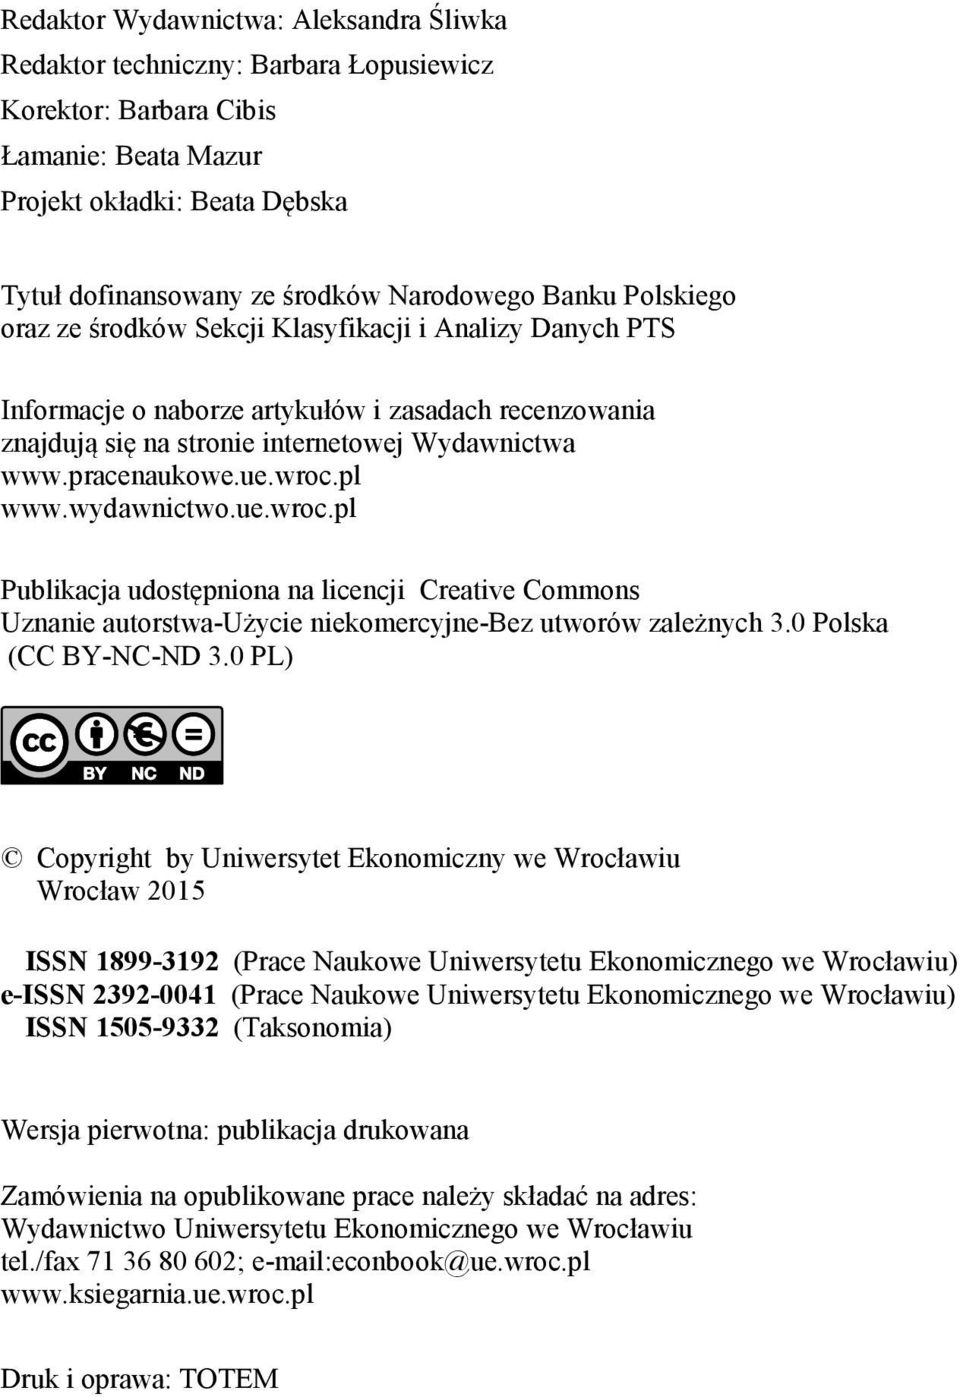 wroc.pl www.wydawnictwo.ue.wroc.pl Publikacja udostępniona na licencji Creative Commons Uznanie autorstwa-użycie niekomercyjne-bez utworów zależnych 3.0 Polska (CC BY-NC-ND 3.